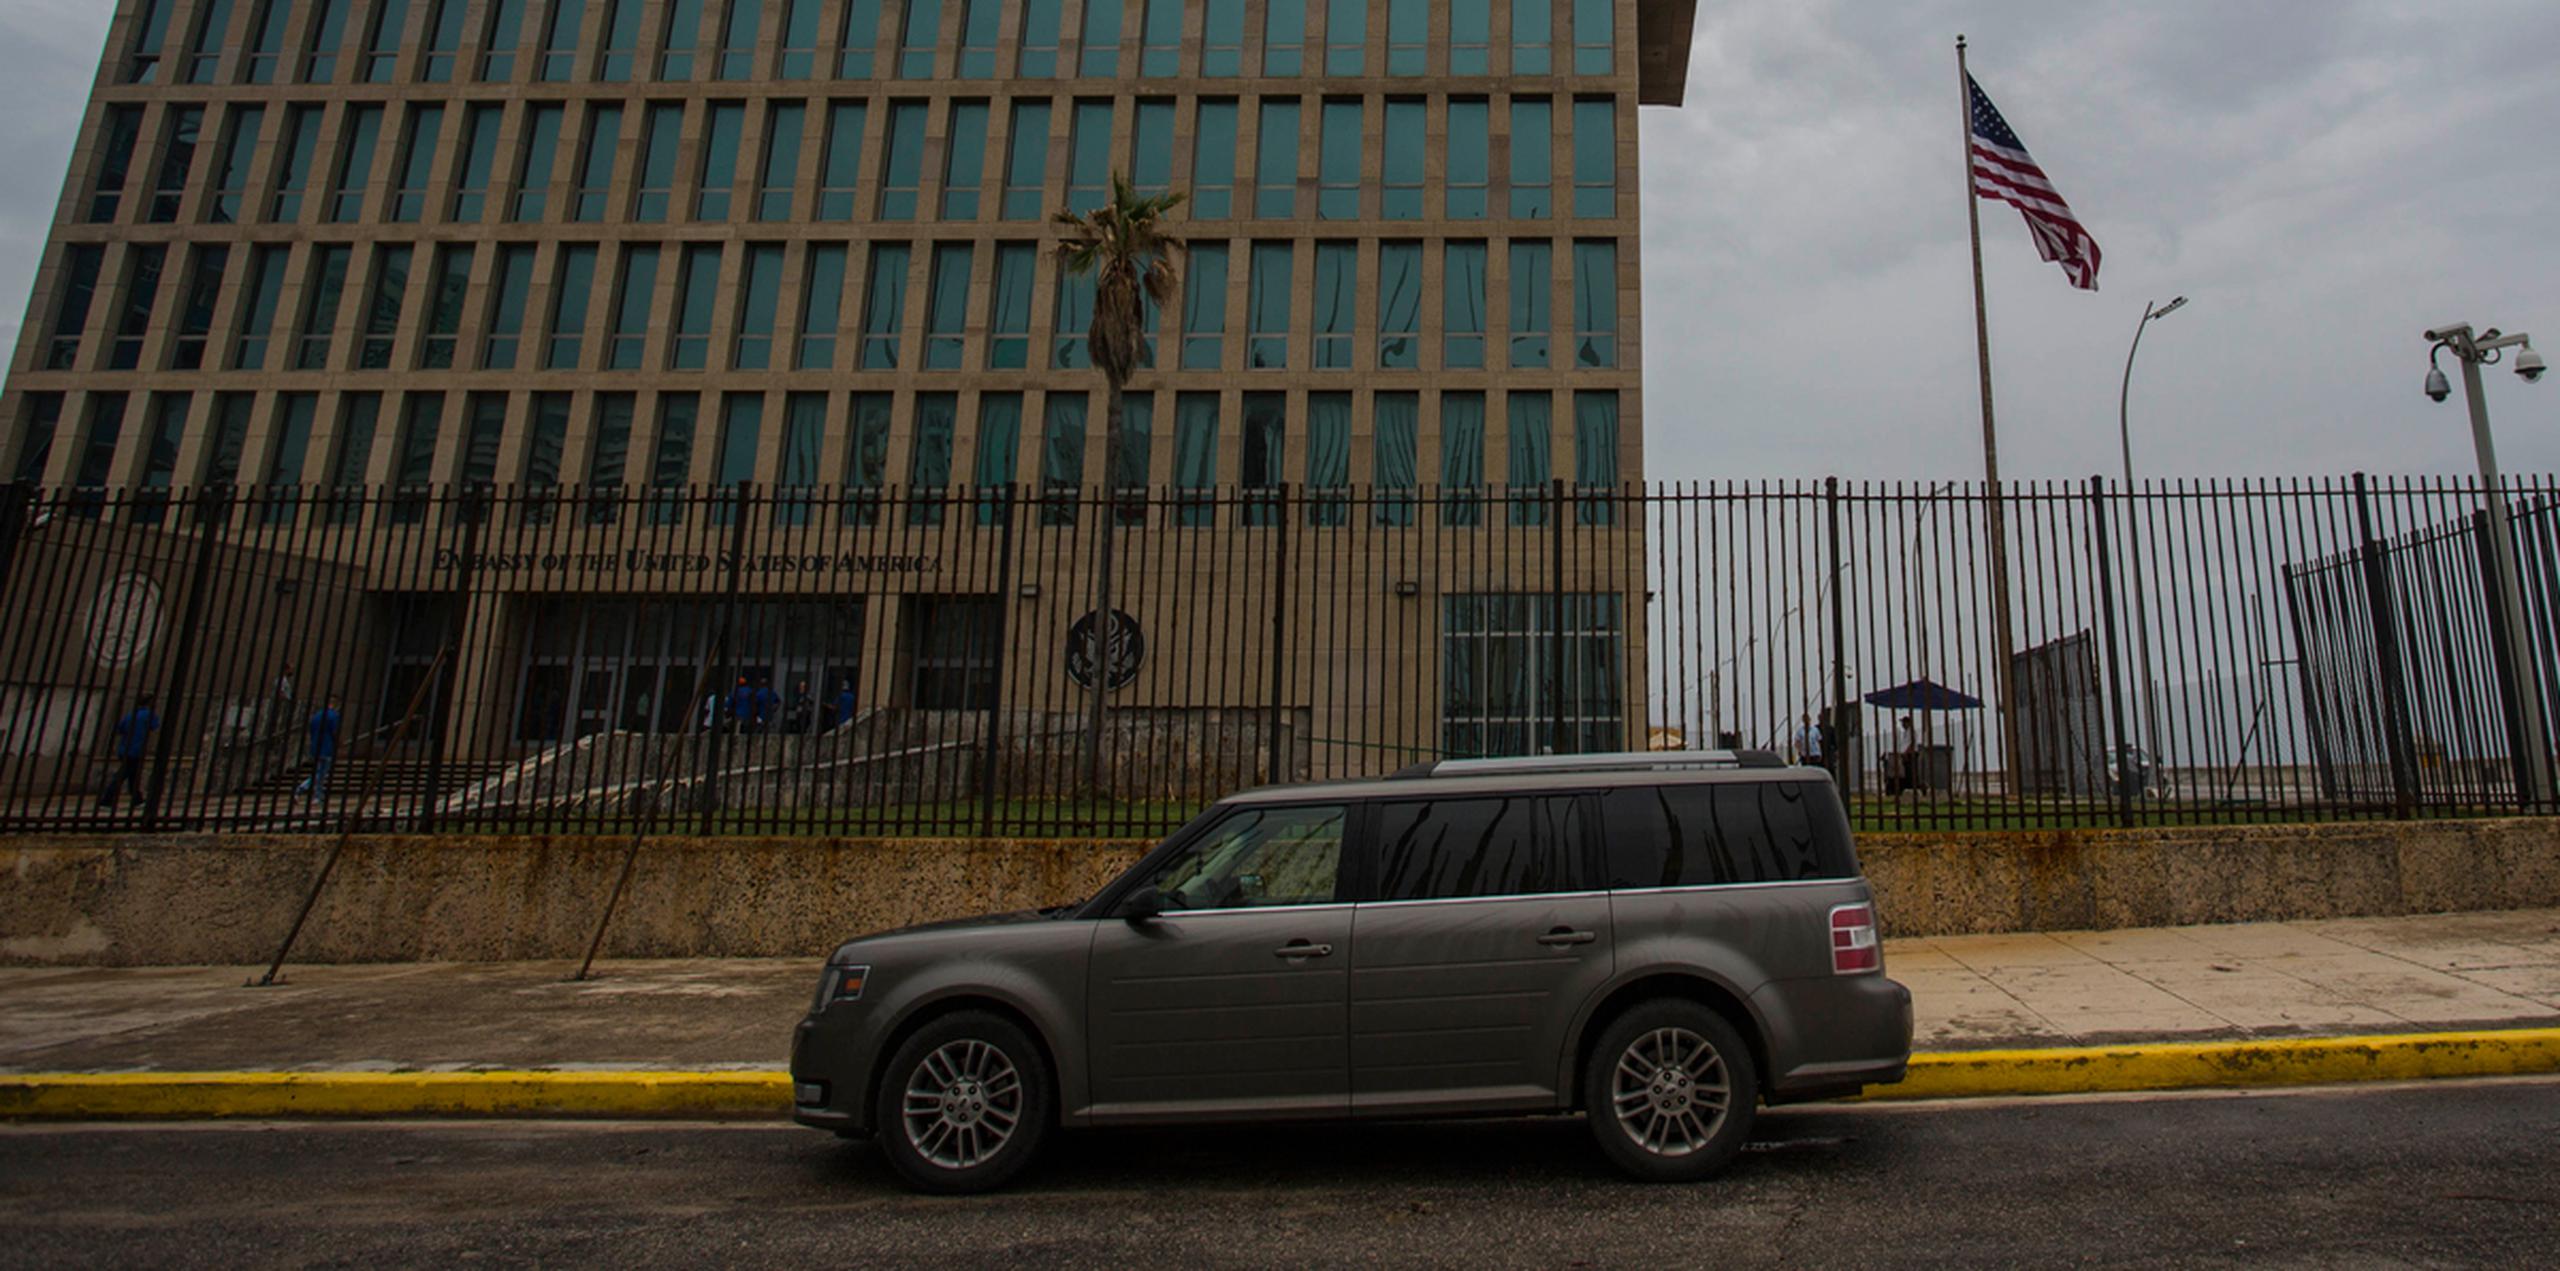 Estados Unidos pedirá a Cuba que reduzca en un 60% su personal diplomático en Washington, dijeron el lunes 2 de octubre de 2017 funcionarios federales que hablaron bajo condición de anonimato. (AP)